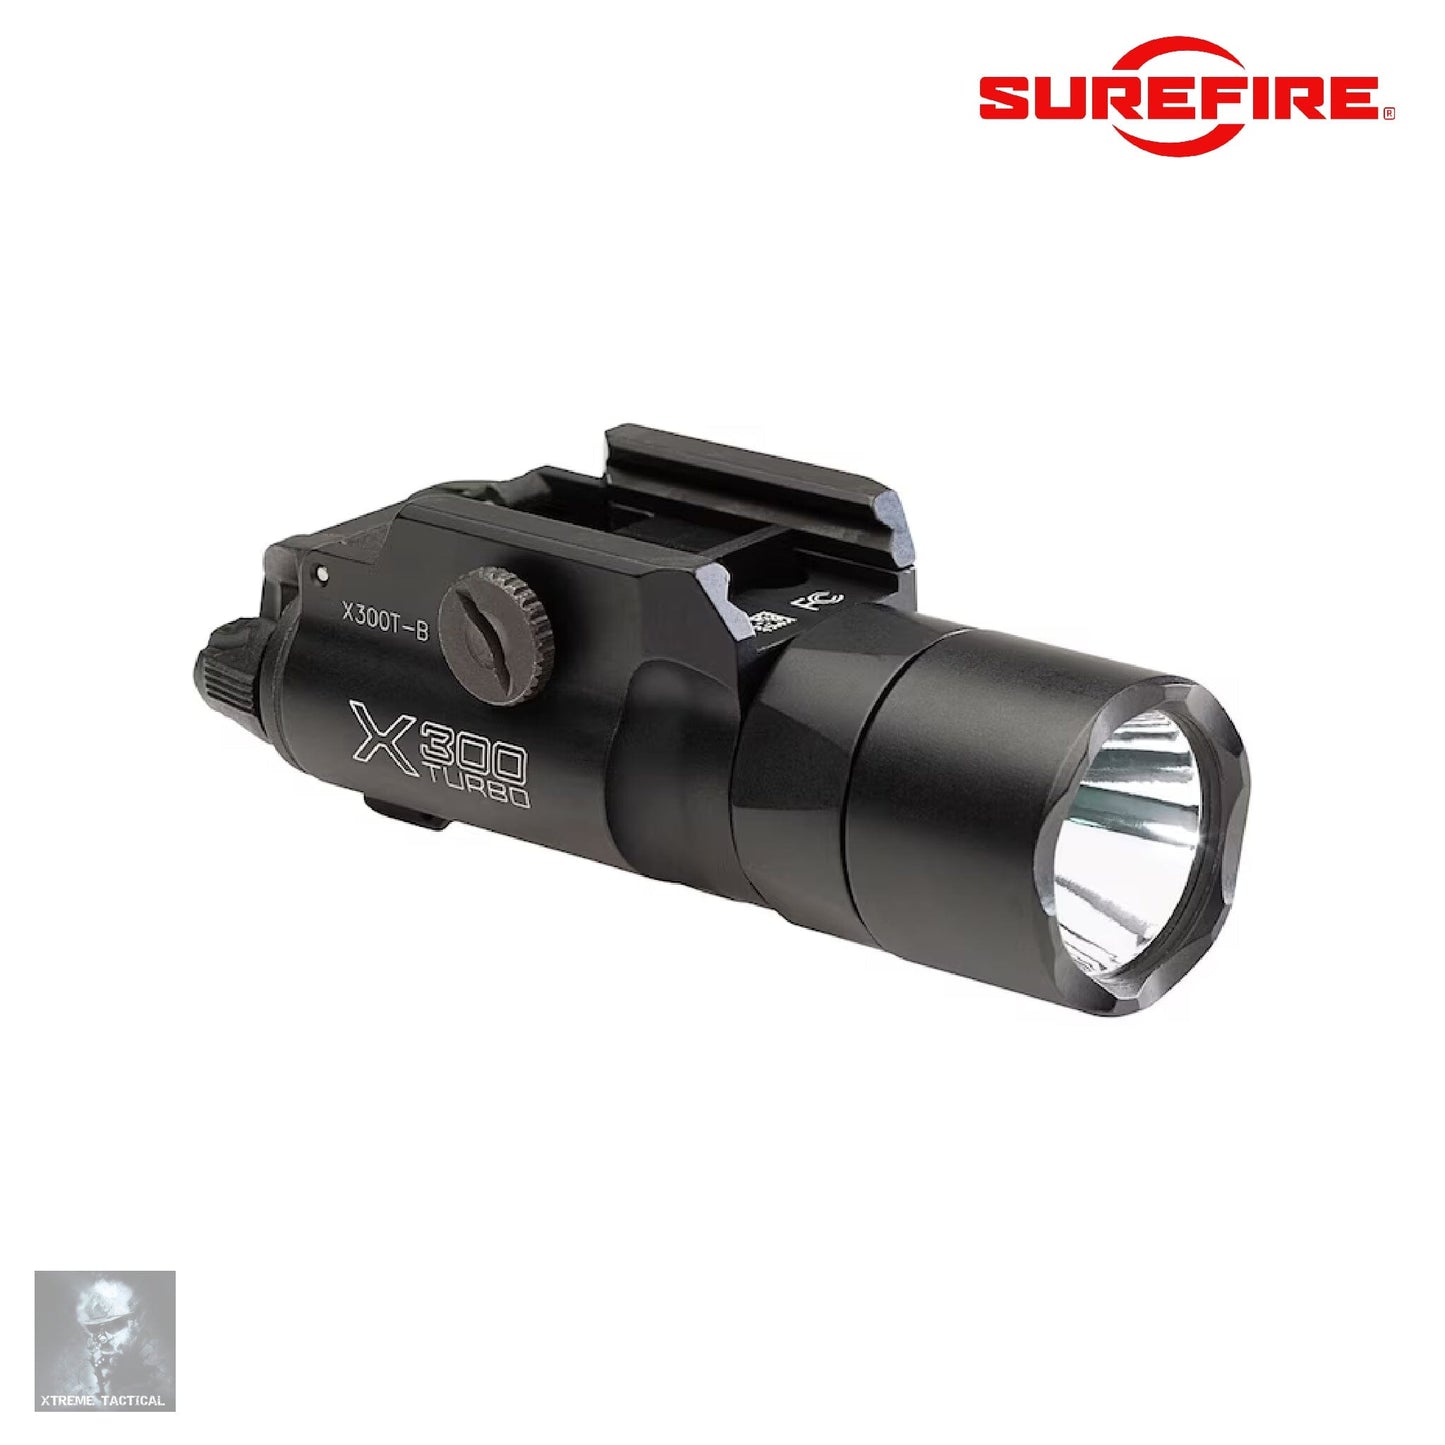 Surefire X300T-B Turbo Weapon Light Black Weapon Light SureFire 